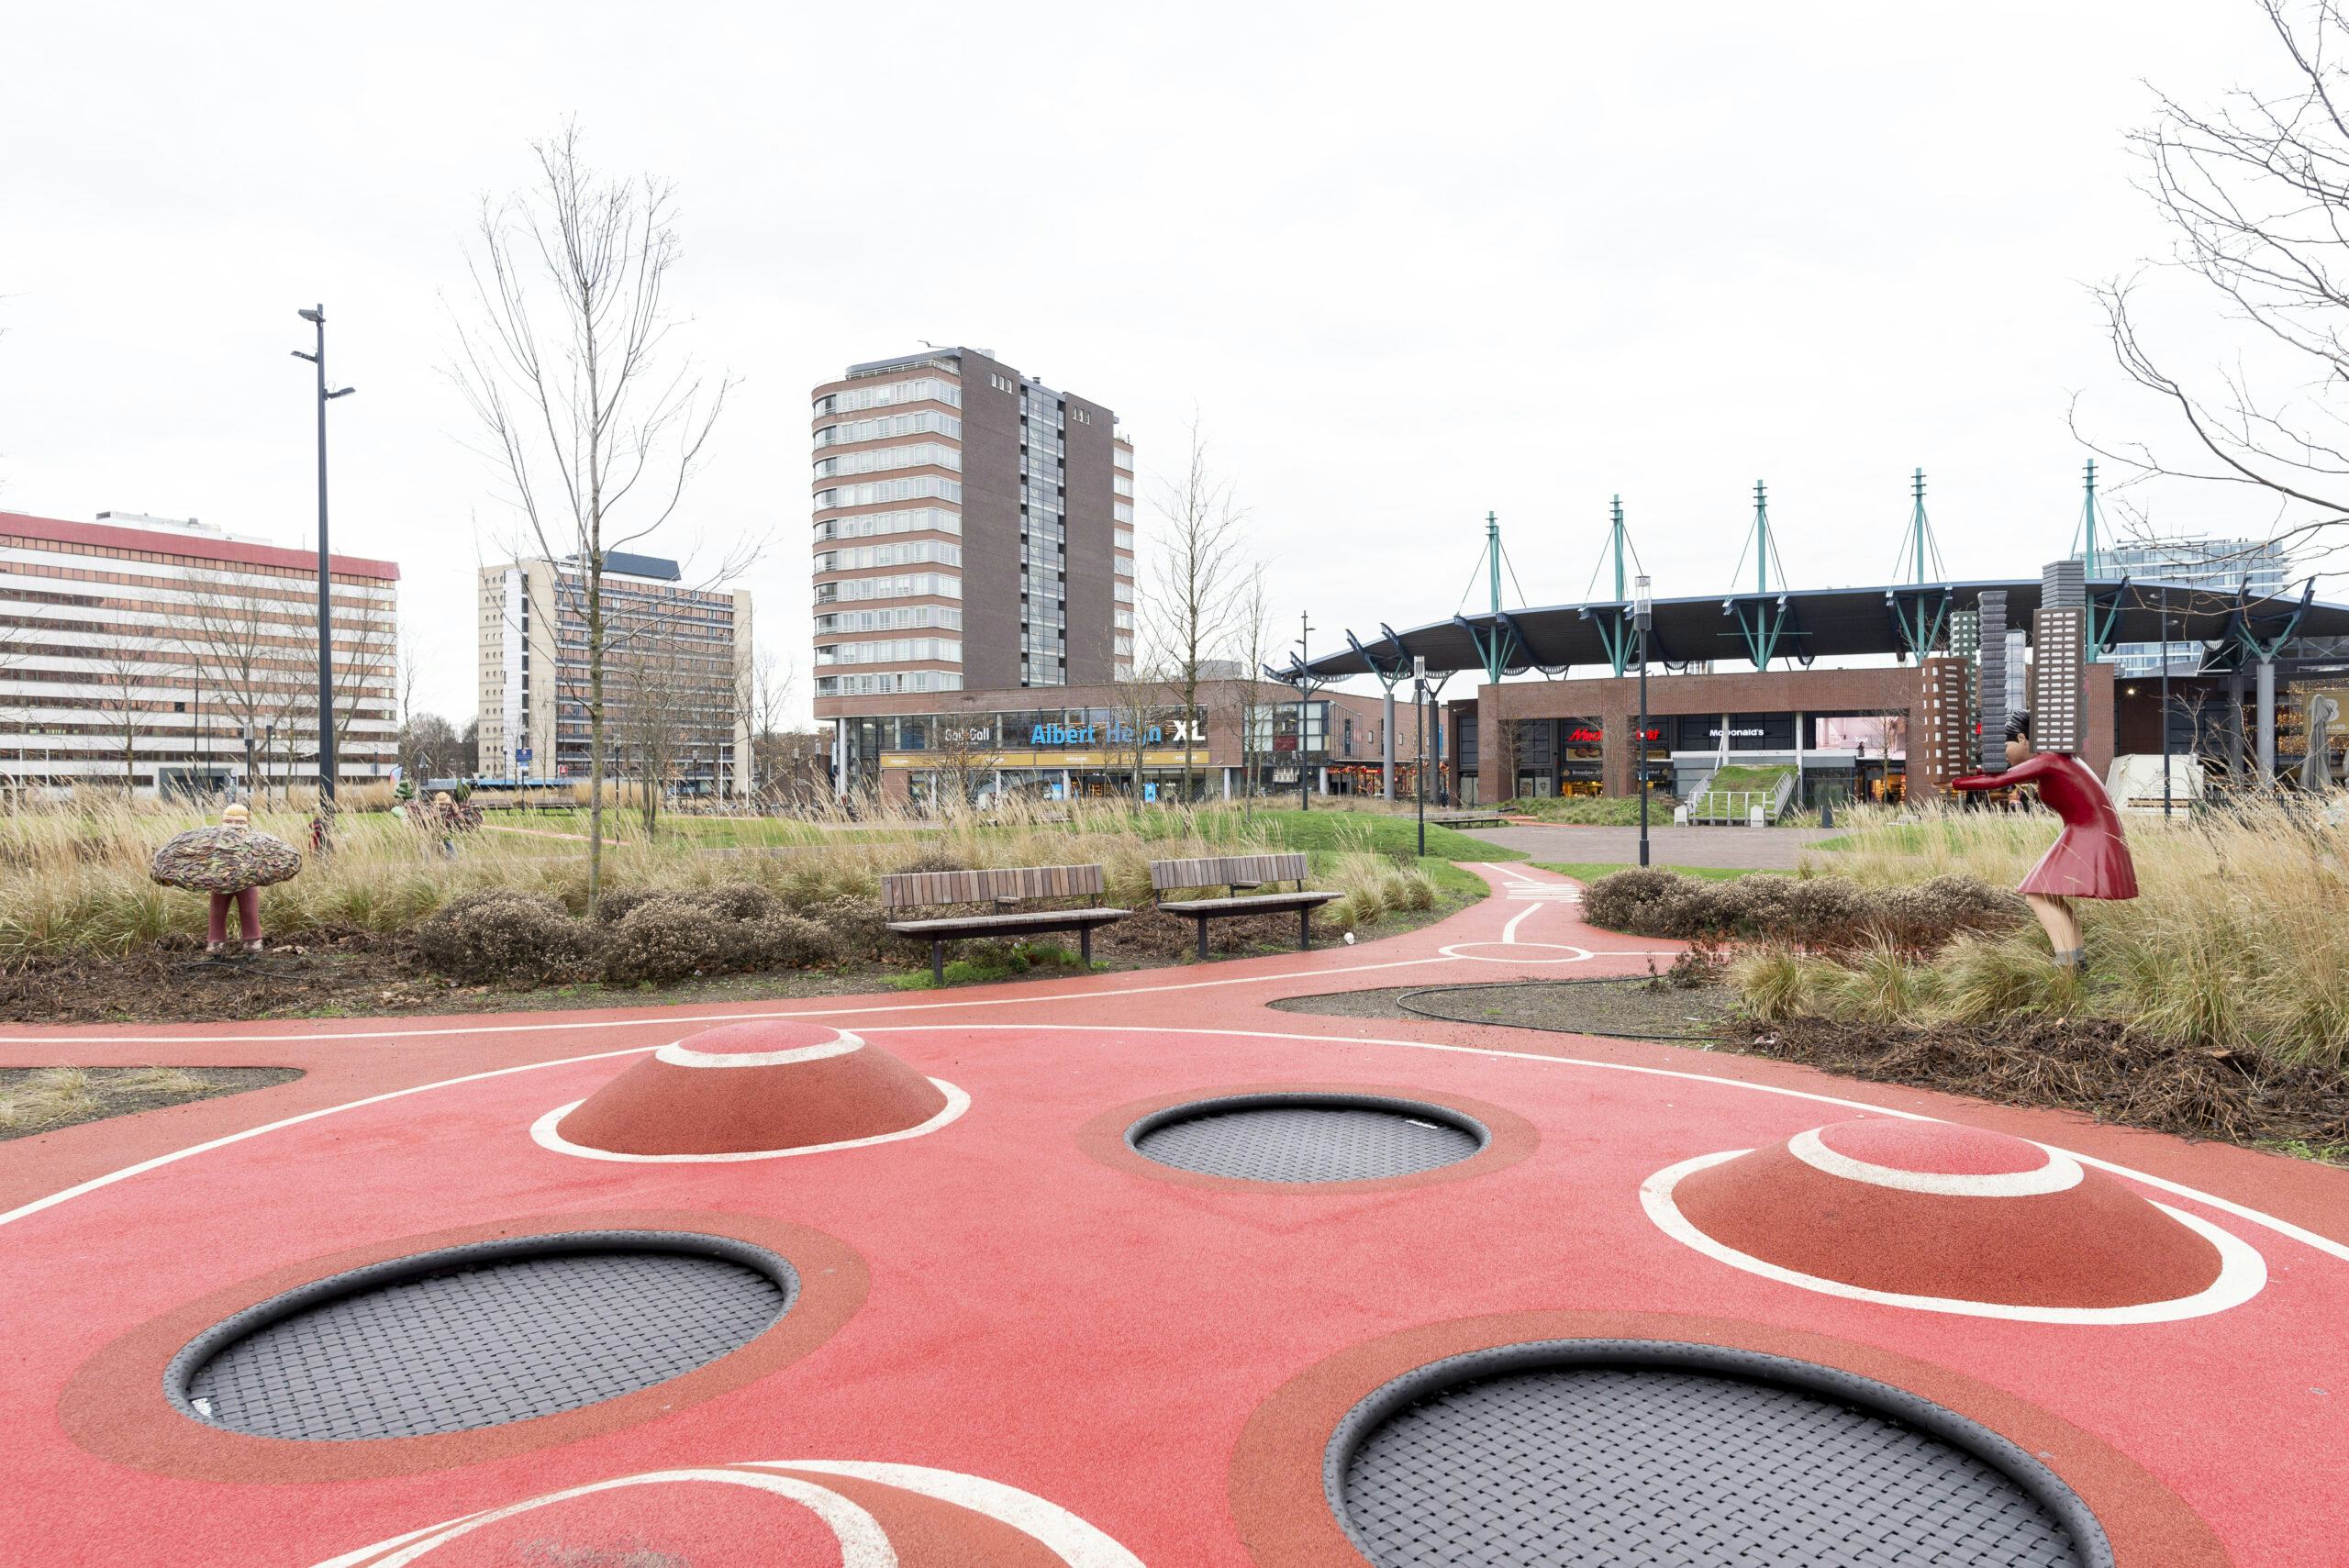 Bogaard stadscentrum: Hoe Rijswijk een verlopen winkelcentrum transformeert tot groen woon-winkelgebied